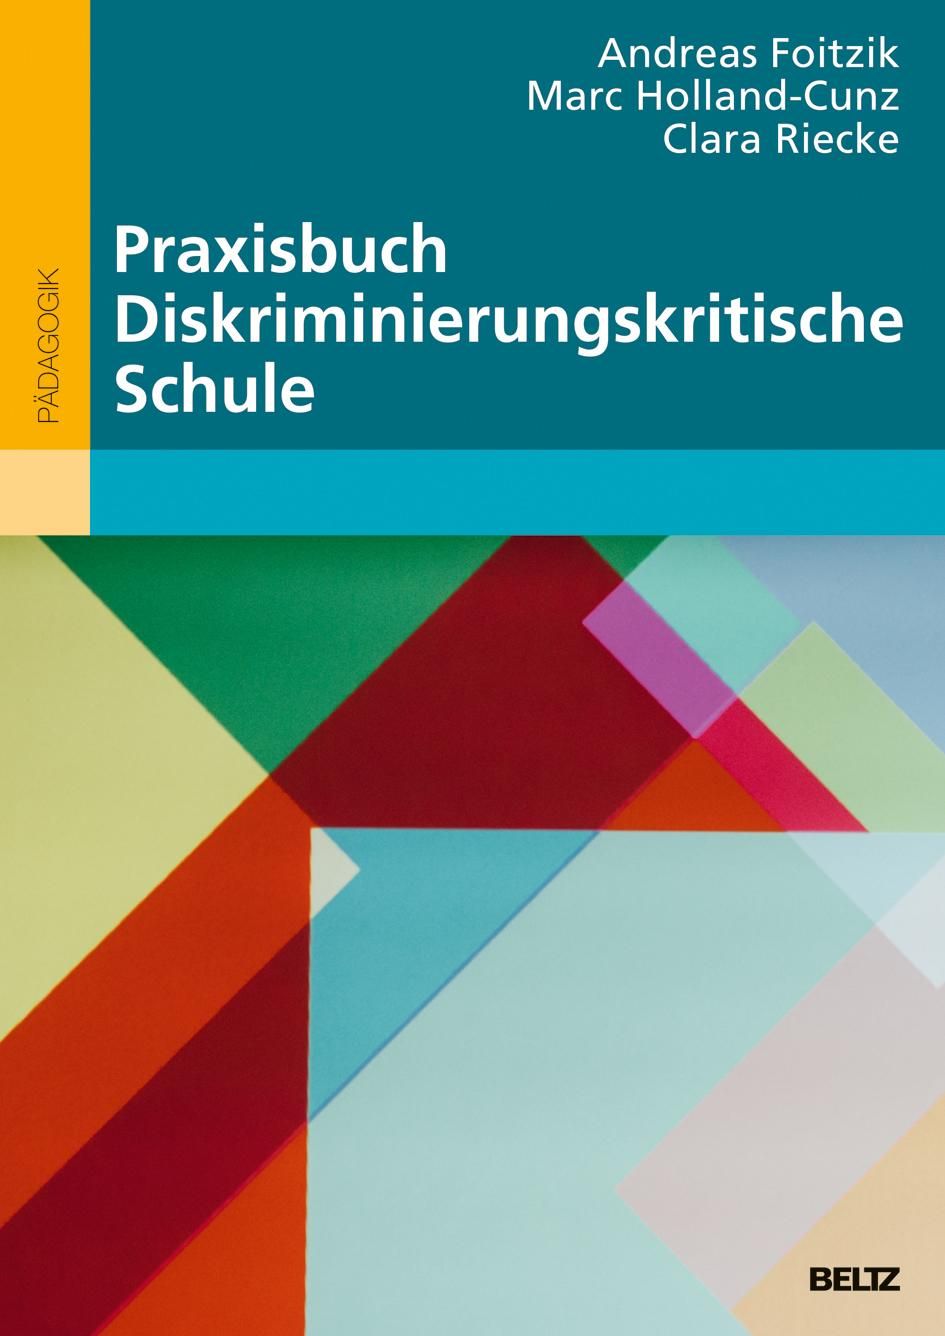 Das Bild zeigt das Cover von "Praxisbuch Diskriminierungskritische Schule" von Andreas Foitzik, Marc Holland-Cunz und Clara Riecke